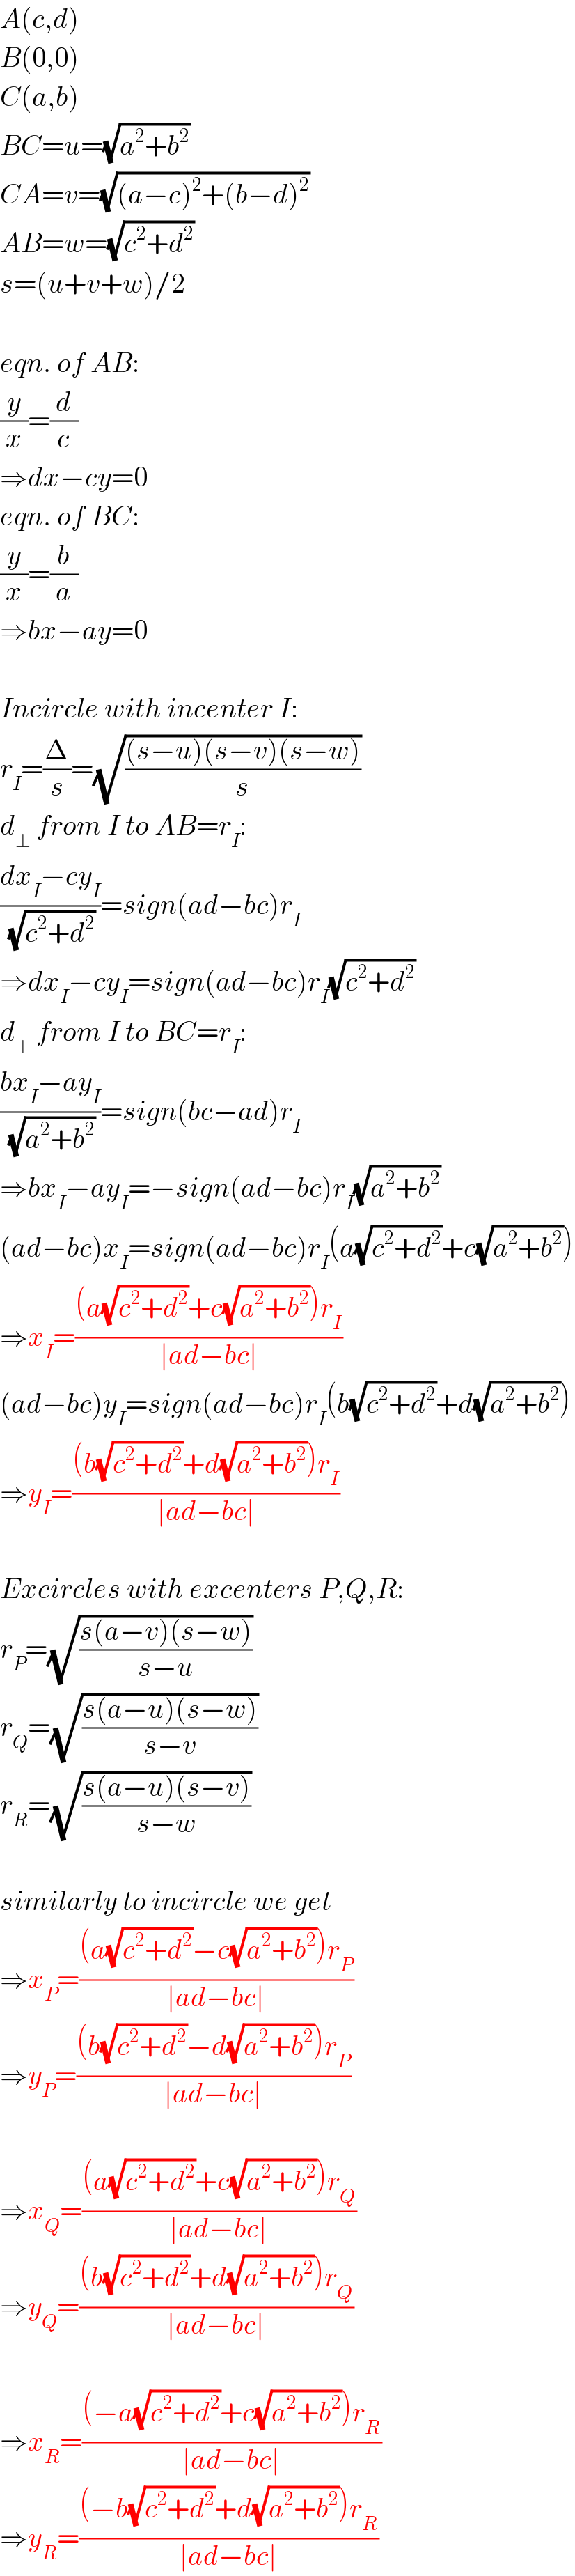 A(c,d)  B(0,0)  C(a,b)  BC=u=(√(a^2 +b^2 ))  CA=v=(√((a−c)^2 +(b−d)^2 ))  AB=w=(√(c^2 +d^2 ))  s=(u+v+w)/2    eqn. of AB:  (y/x)=(d/c)  ⇒dx−cy=0  eqn. of BC:  (y/x)=(b/a)  ⇒bx−ay=0    Incircle with incenter I:  r_I =(Δ/s)=(√(((s−u)(s−v)(s−w))/s))  d_⊥  from I to AB=r_I :  ((dx_I −cy_I )/(√(c^2 +d^2 )))=sign(ad−bc)r_I   ⇒dx_I −cy_I =sign(ad−bc)r_I (√(c^2 +d^2 ))  d_⊥  from I to BC=r_I :  ((bx_I −ay_I )/(√(a^2 +b^2 )))=sign(bc−ad)r_I   ⇒bx_I −ay_I =−sign(ad−bc)r_I (√(a^2 +b^2 ))  (ad−bc)x_I =sign(ad−bc)r_I (a(√(c^2 +d^2 ))+c(√(a^2 +b^2 )))  ⇒x_I =(((a(√(c^2 +d^2 ))+c(√(a^2 +b^2 )))r_I )/(∣ad−bc∣))  (ad−bc)y_I =sign(ad−bc)r_I (b(√(c^2 +d^2 ))+d(√(a^2 +b^2 )))  ⇒y_I =(((b(√(c^2 +d^2 ))+d(√(a^2 +b^2 )))r_I )/(∣ad−bc∣))    Excircles with excenters P,Q,R:  r_P =(√((s(a−v)(s−w))/(s−u)))  r_Q =(√((s(a−u)(s−w))/(s−v)))  r_R =(√((s(a−u)(s−v))/(s−w)))    similarly to incircle we get  ⇒x_P =(((a(√(c^2 +d^2 ))−c(√(a^2 +b^2 )))r_P )/(∣ad−bc∣))  ⇒y_P =(((b(√(c^2 +d^2 ))−d(√(a^2 +b^2 )))r_P )/(∣ad−bc∣))    ⇒x_Q =(((a(√(c^2 +d^2 ))+c(√(a^2 +b^2 )))r_Q )/(∣ad−bc∣))  ⇒y_Q =(((b(√(c^2 +d^2 ))+d(√(a^2 +b^2 )))r_Q )/(∣ad−bc∣))    ⇒x_R =(((−a(√(c^2 +d^2 ))+c(√(a^2 +b^2 )))r_R )/(∣ad−bc∣))  ⇒y_R =(((−b(√(c^2 +d^2 ))+d(√(a^2 +b^2 )))r_R )/(∣ad−bc∣))  